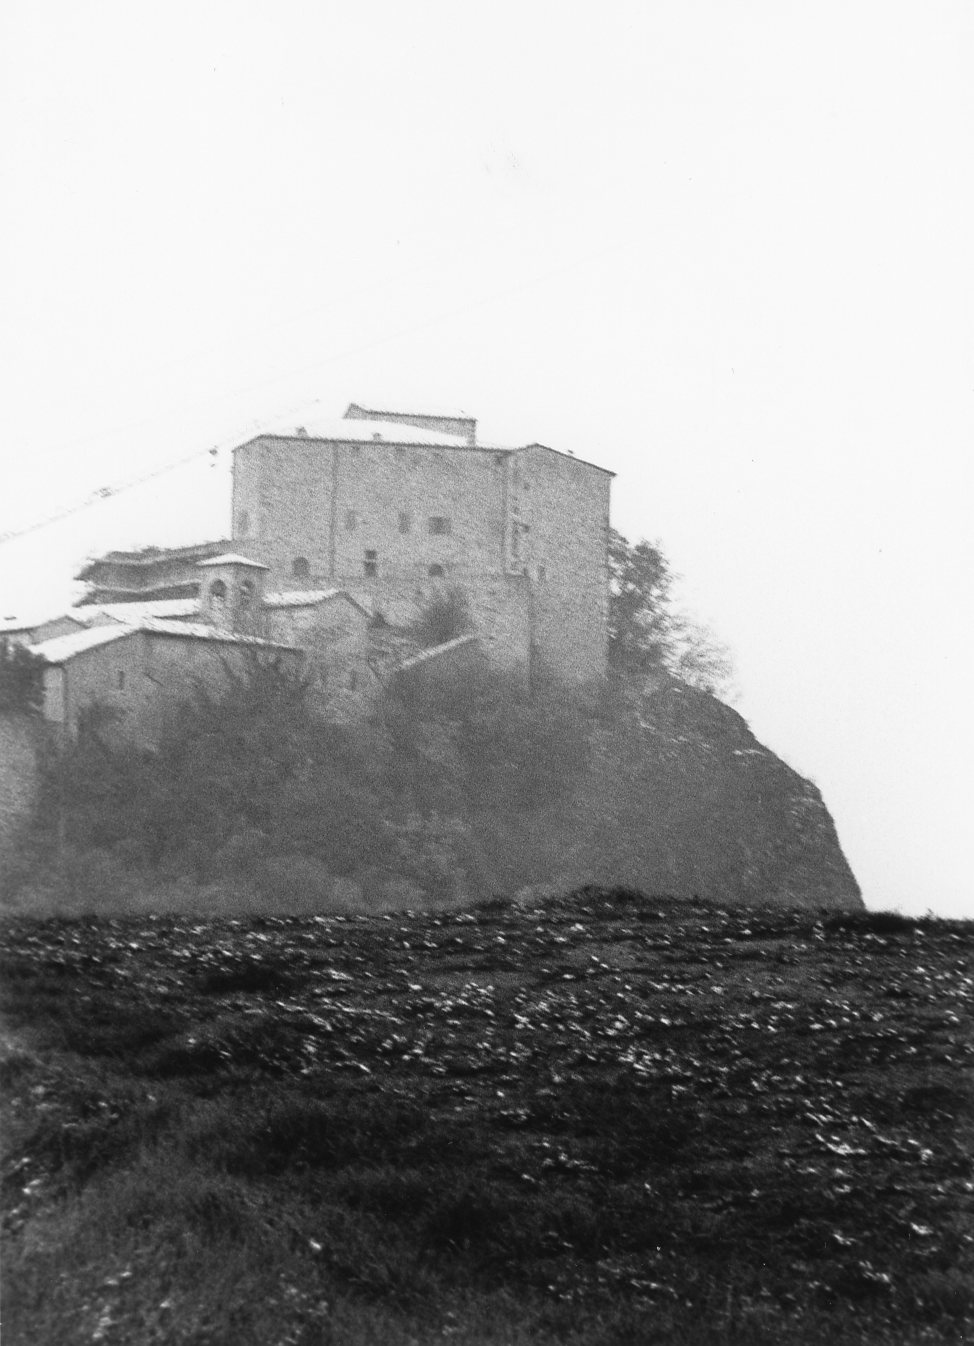 Castello di Rossena (castello) - Canossa (RE)  (sec. XI)